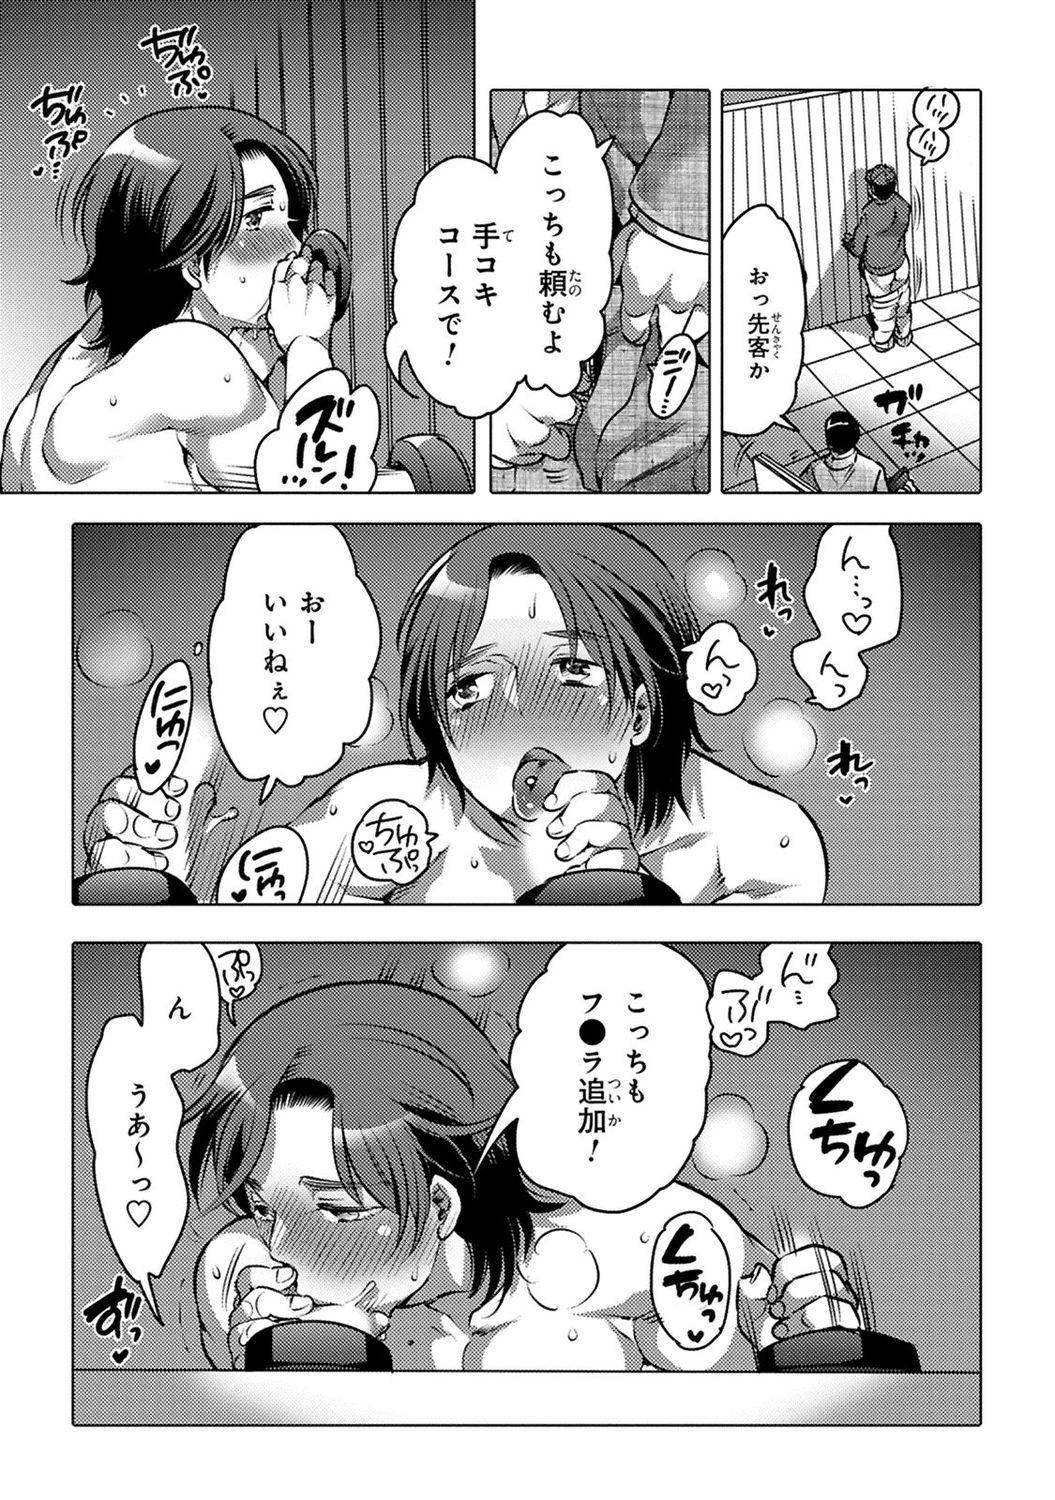 4some Aiyoku Lucky Hall Rebolando - Page 11